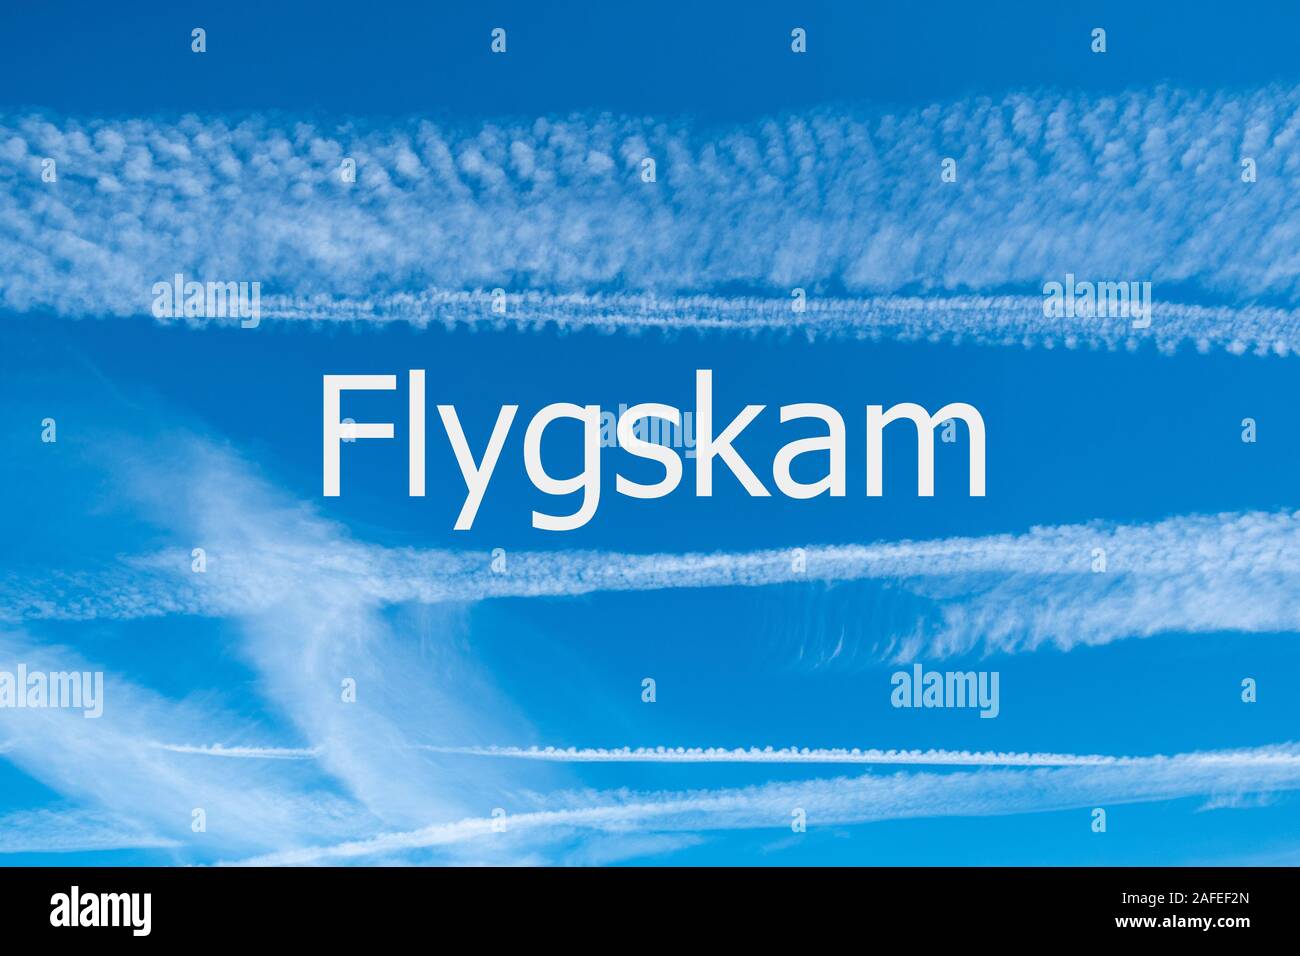 Cambiamenti climatici e flygskam Concetto di immagine con il blu del cielo e sentieri di vapore da aeromobili con la parola flygskam (Svedese per battenti vergogna) Foto Stock